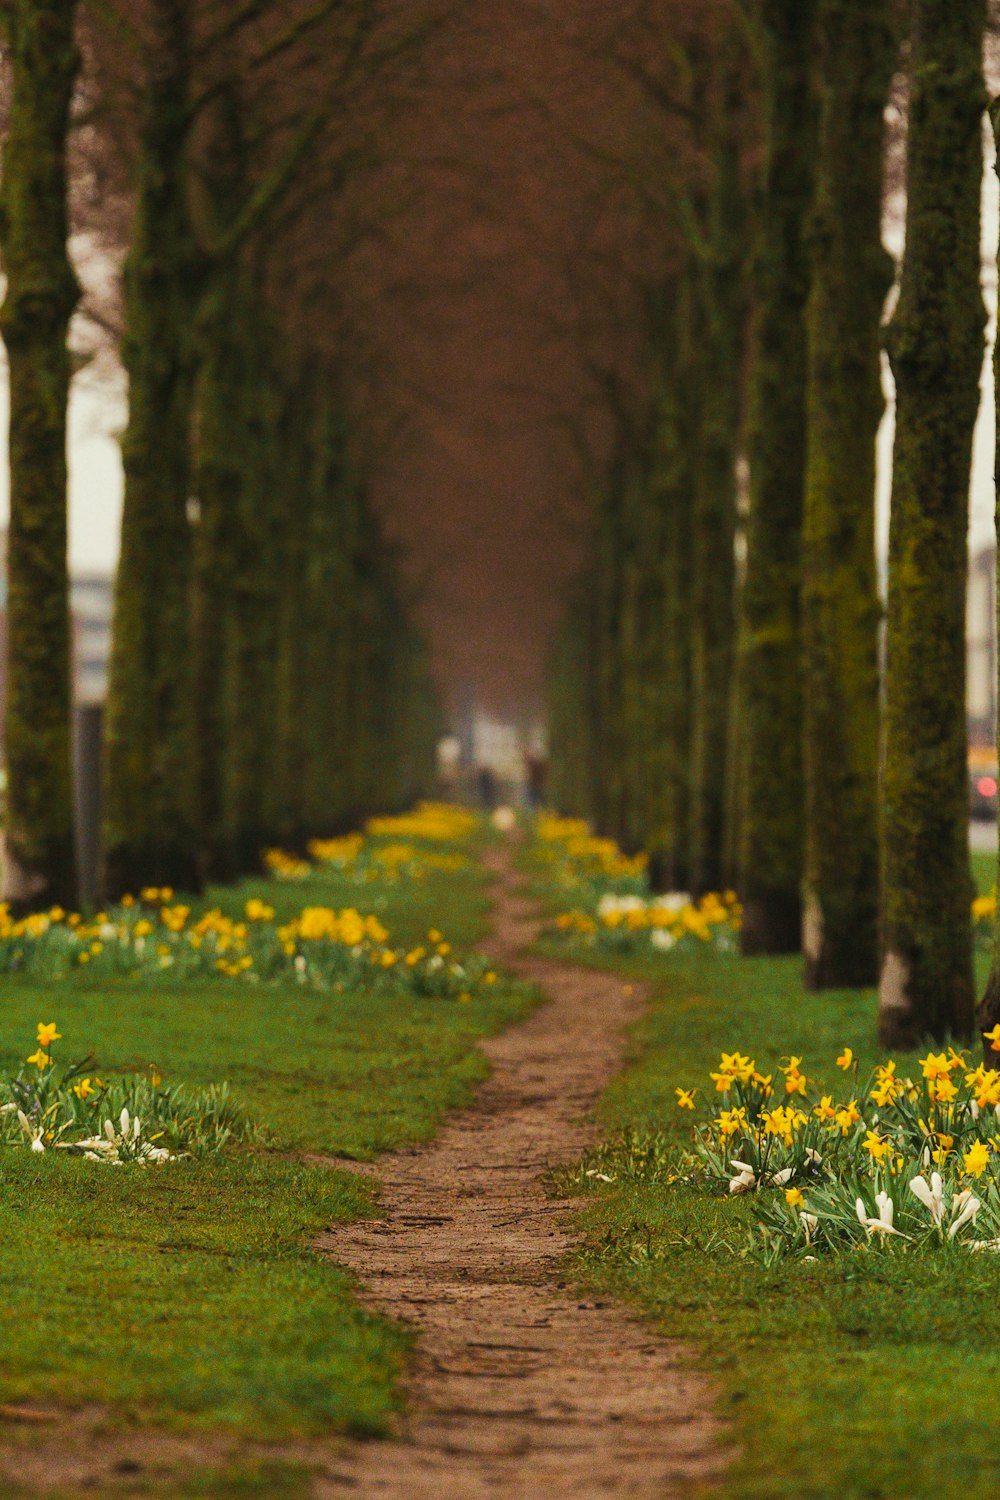 Un sentiero sterrato fiancheggiato da alberi e fiori gialli